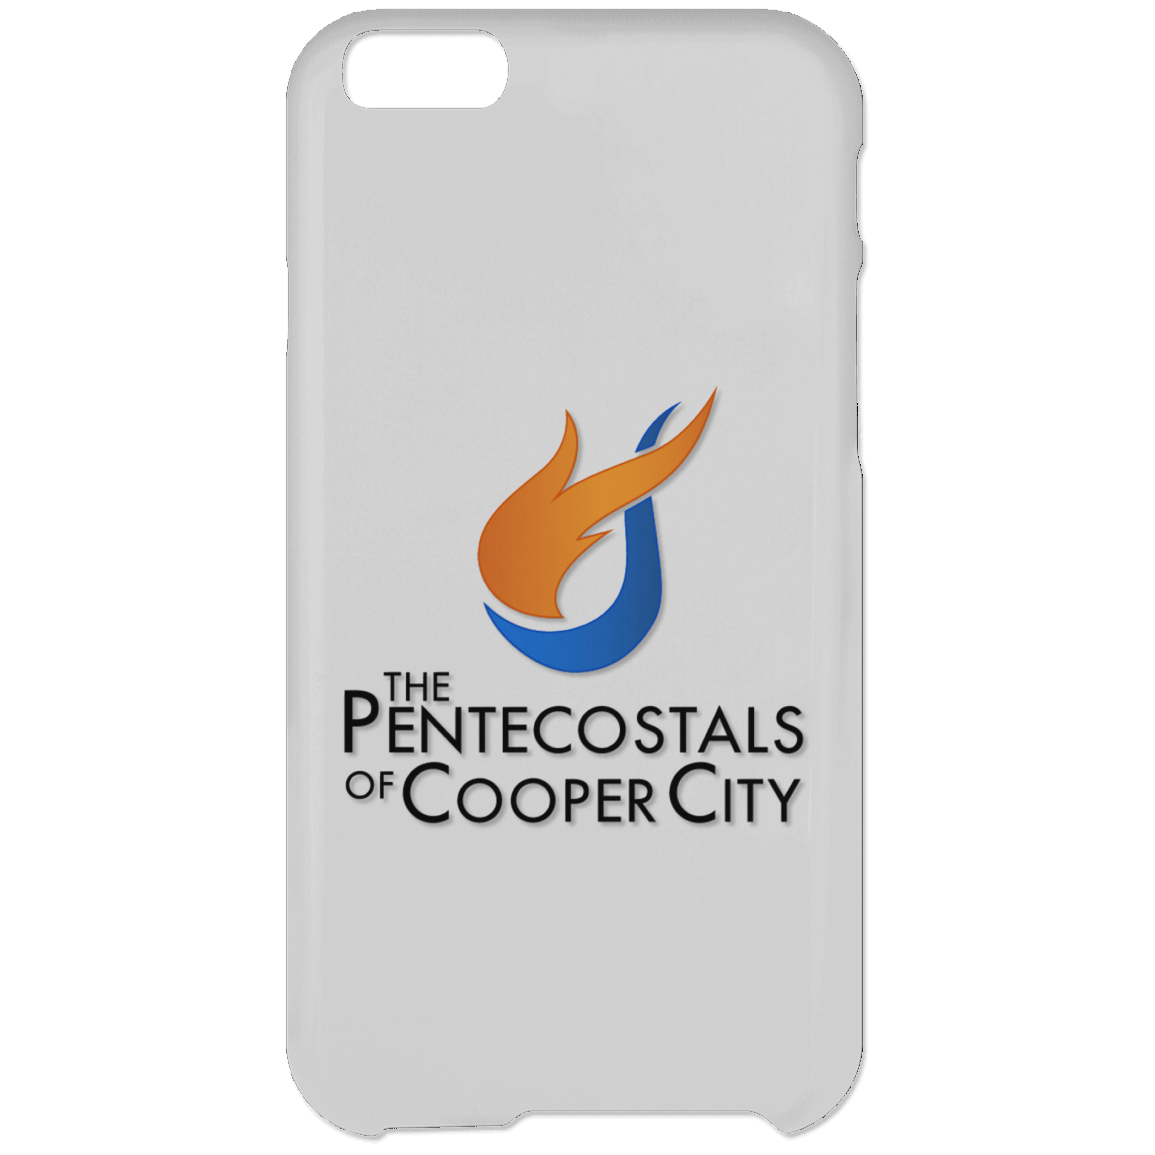 The Pentecostals Of Cooper City - iPhone 6 Plus Case